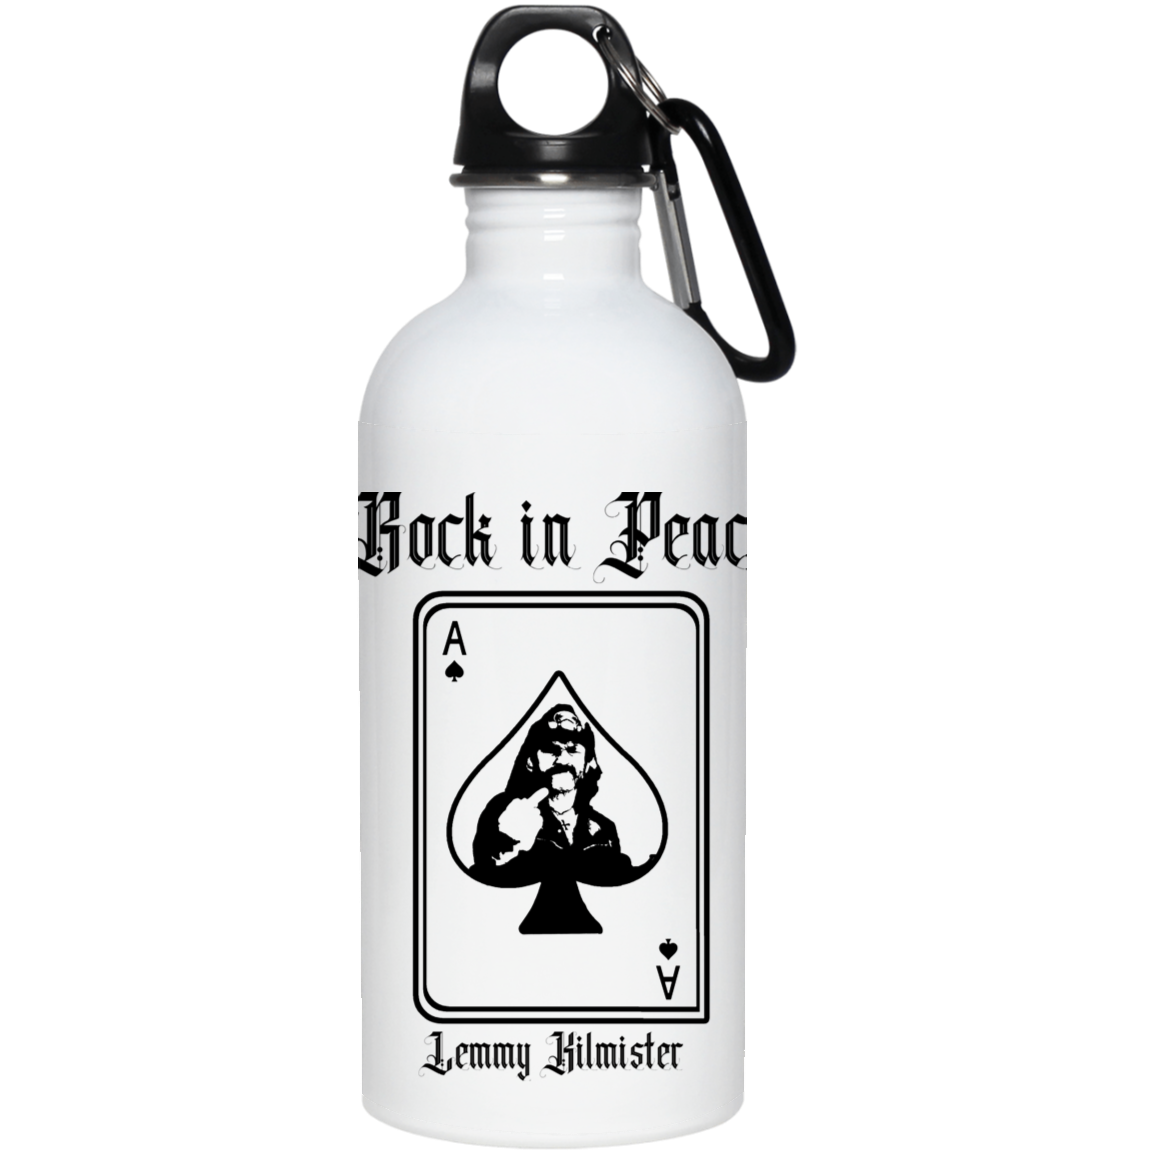 ArtichokeUSA Custom Design. Lemmy Kilmister "Ace of Spades" Tribute Fan Art Version 2 of 2. 20 oz. Stainless Steel Water Bottle